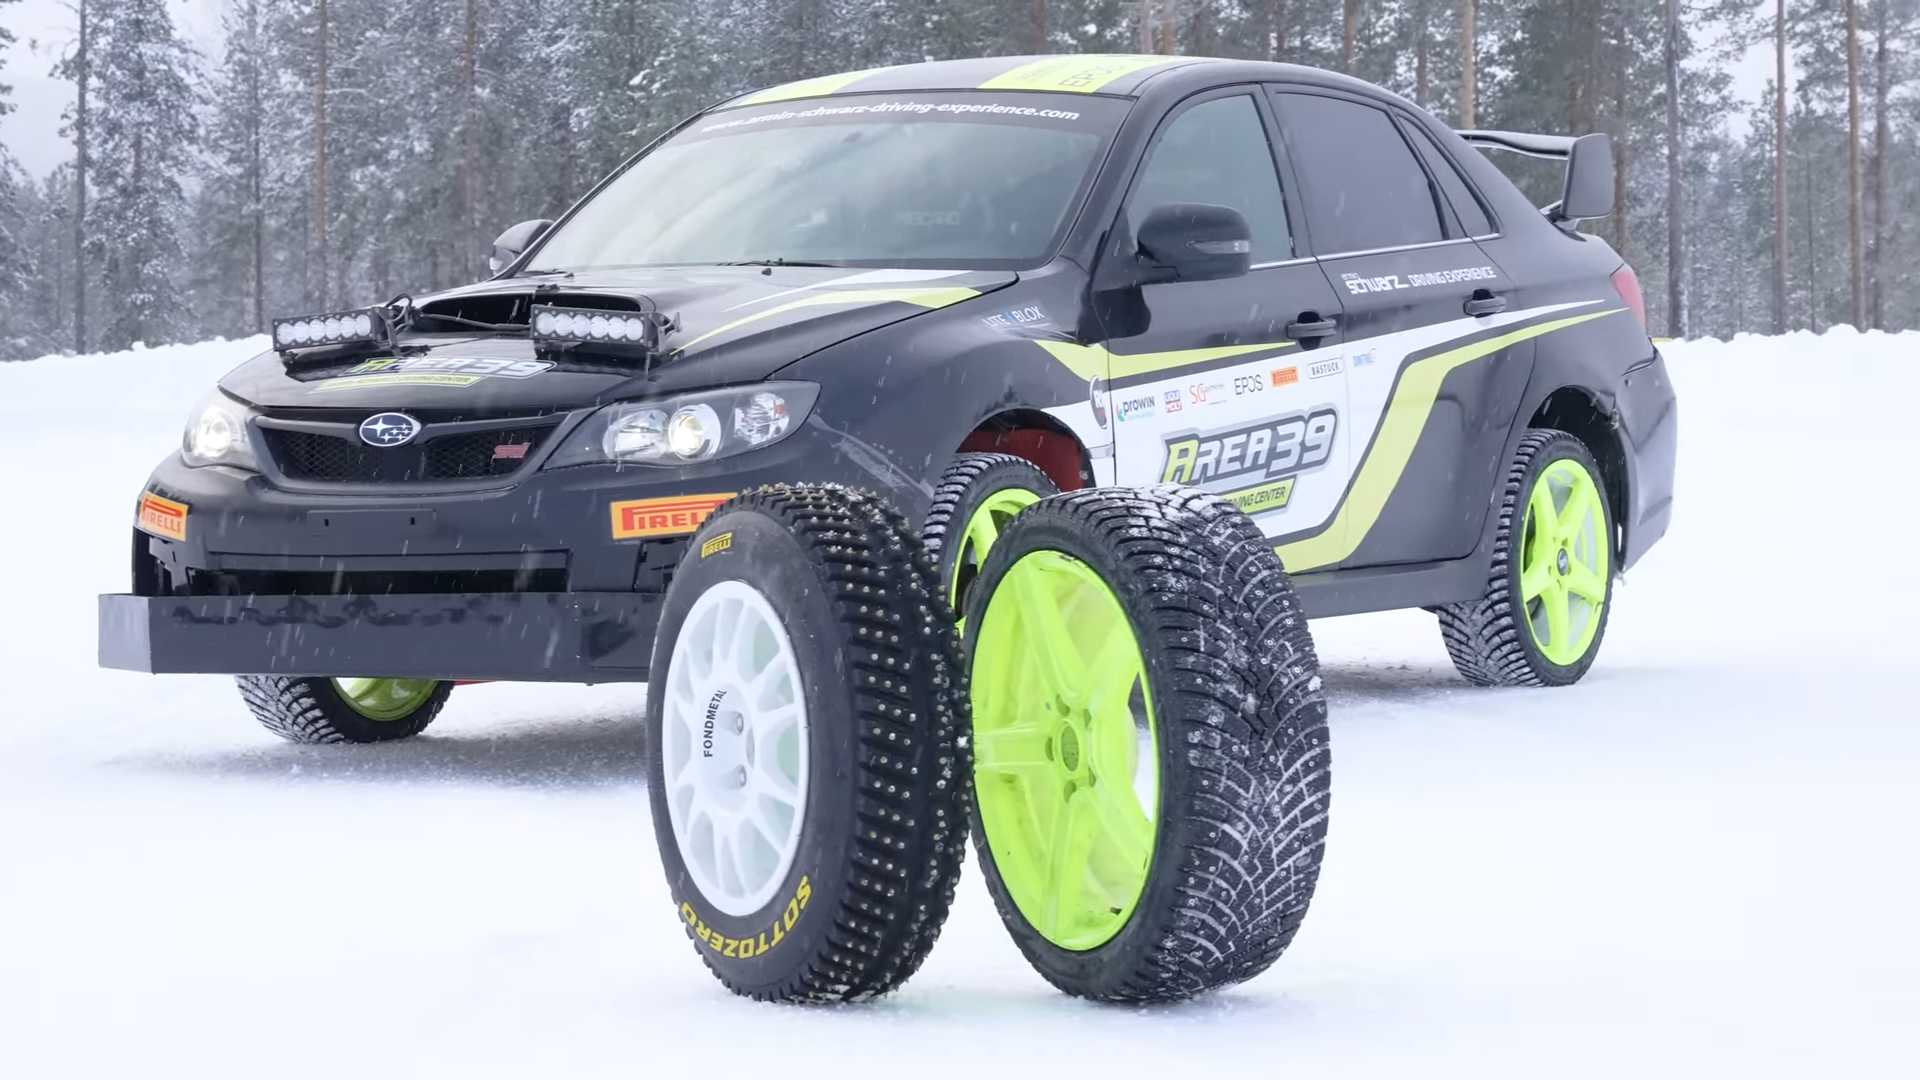 镶嵌轮胎 Comparo 展示了 WRC 拉力赛轮胎令人难以置信的冰抓地力